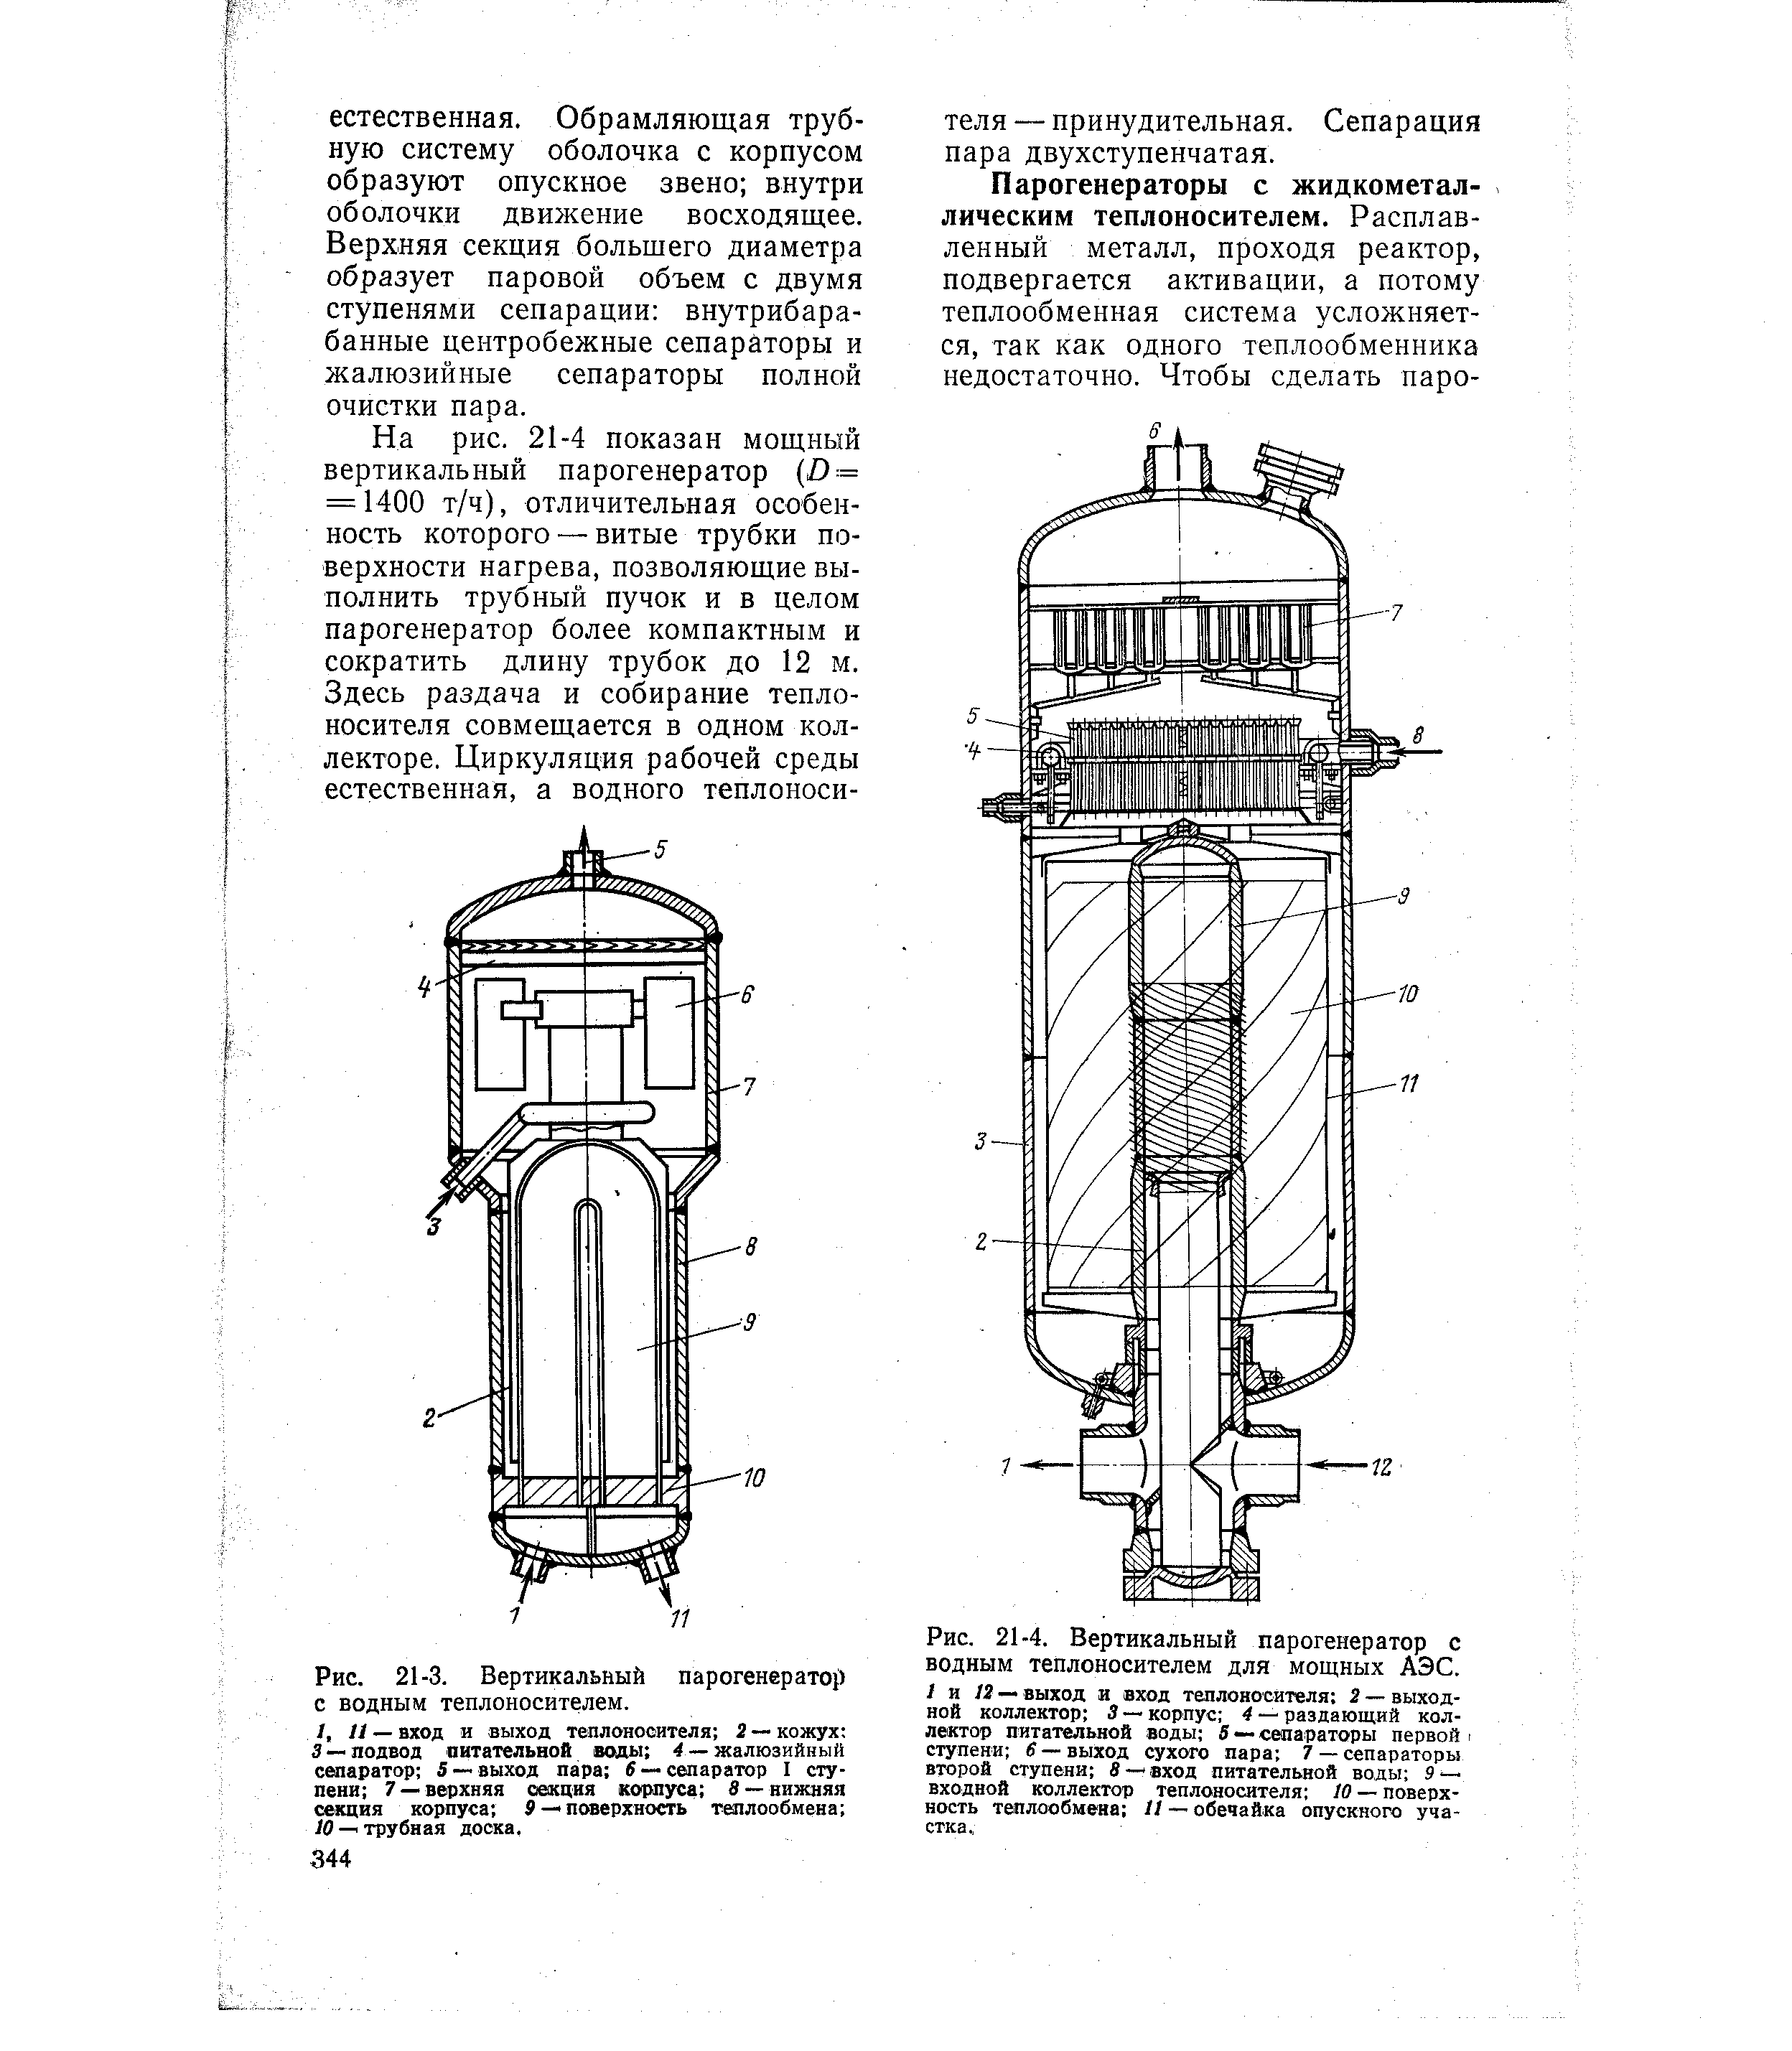 Рис. 21-4. Вертикальный парогенератор с водным теплоносителем для мощных АЭС.
